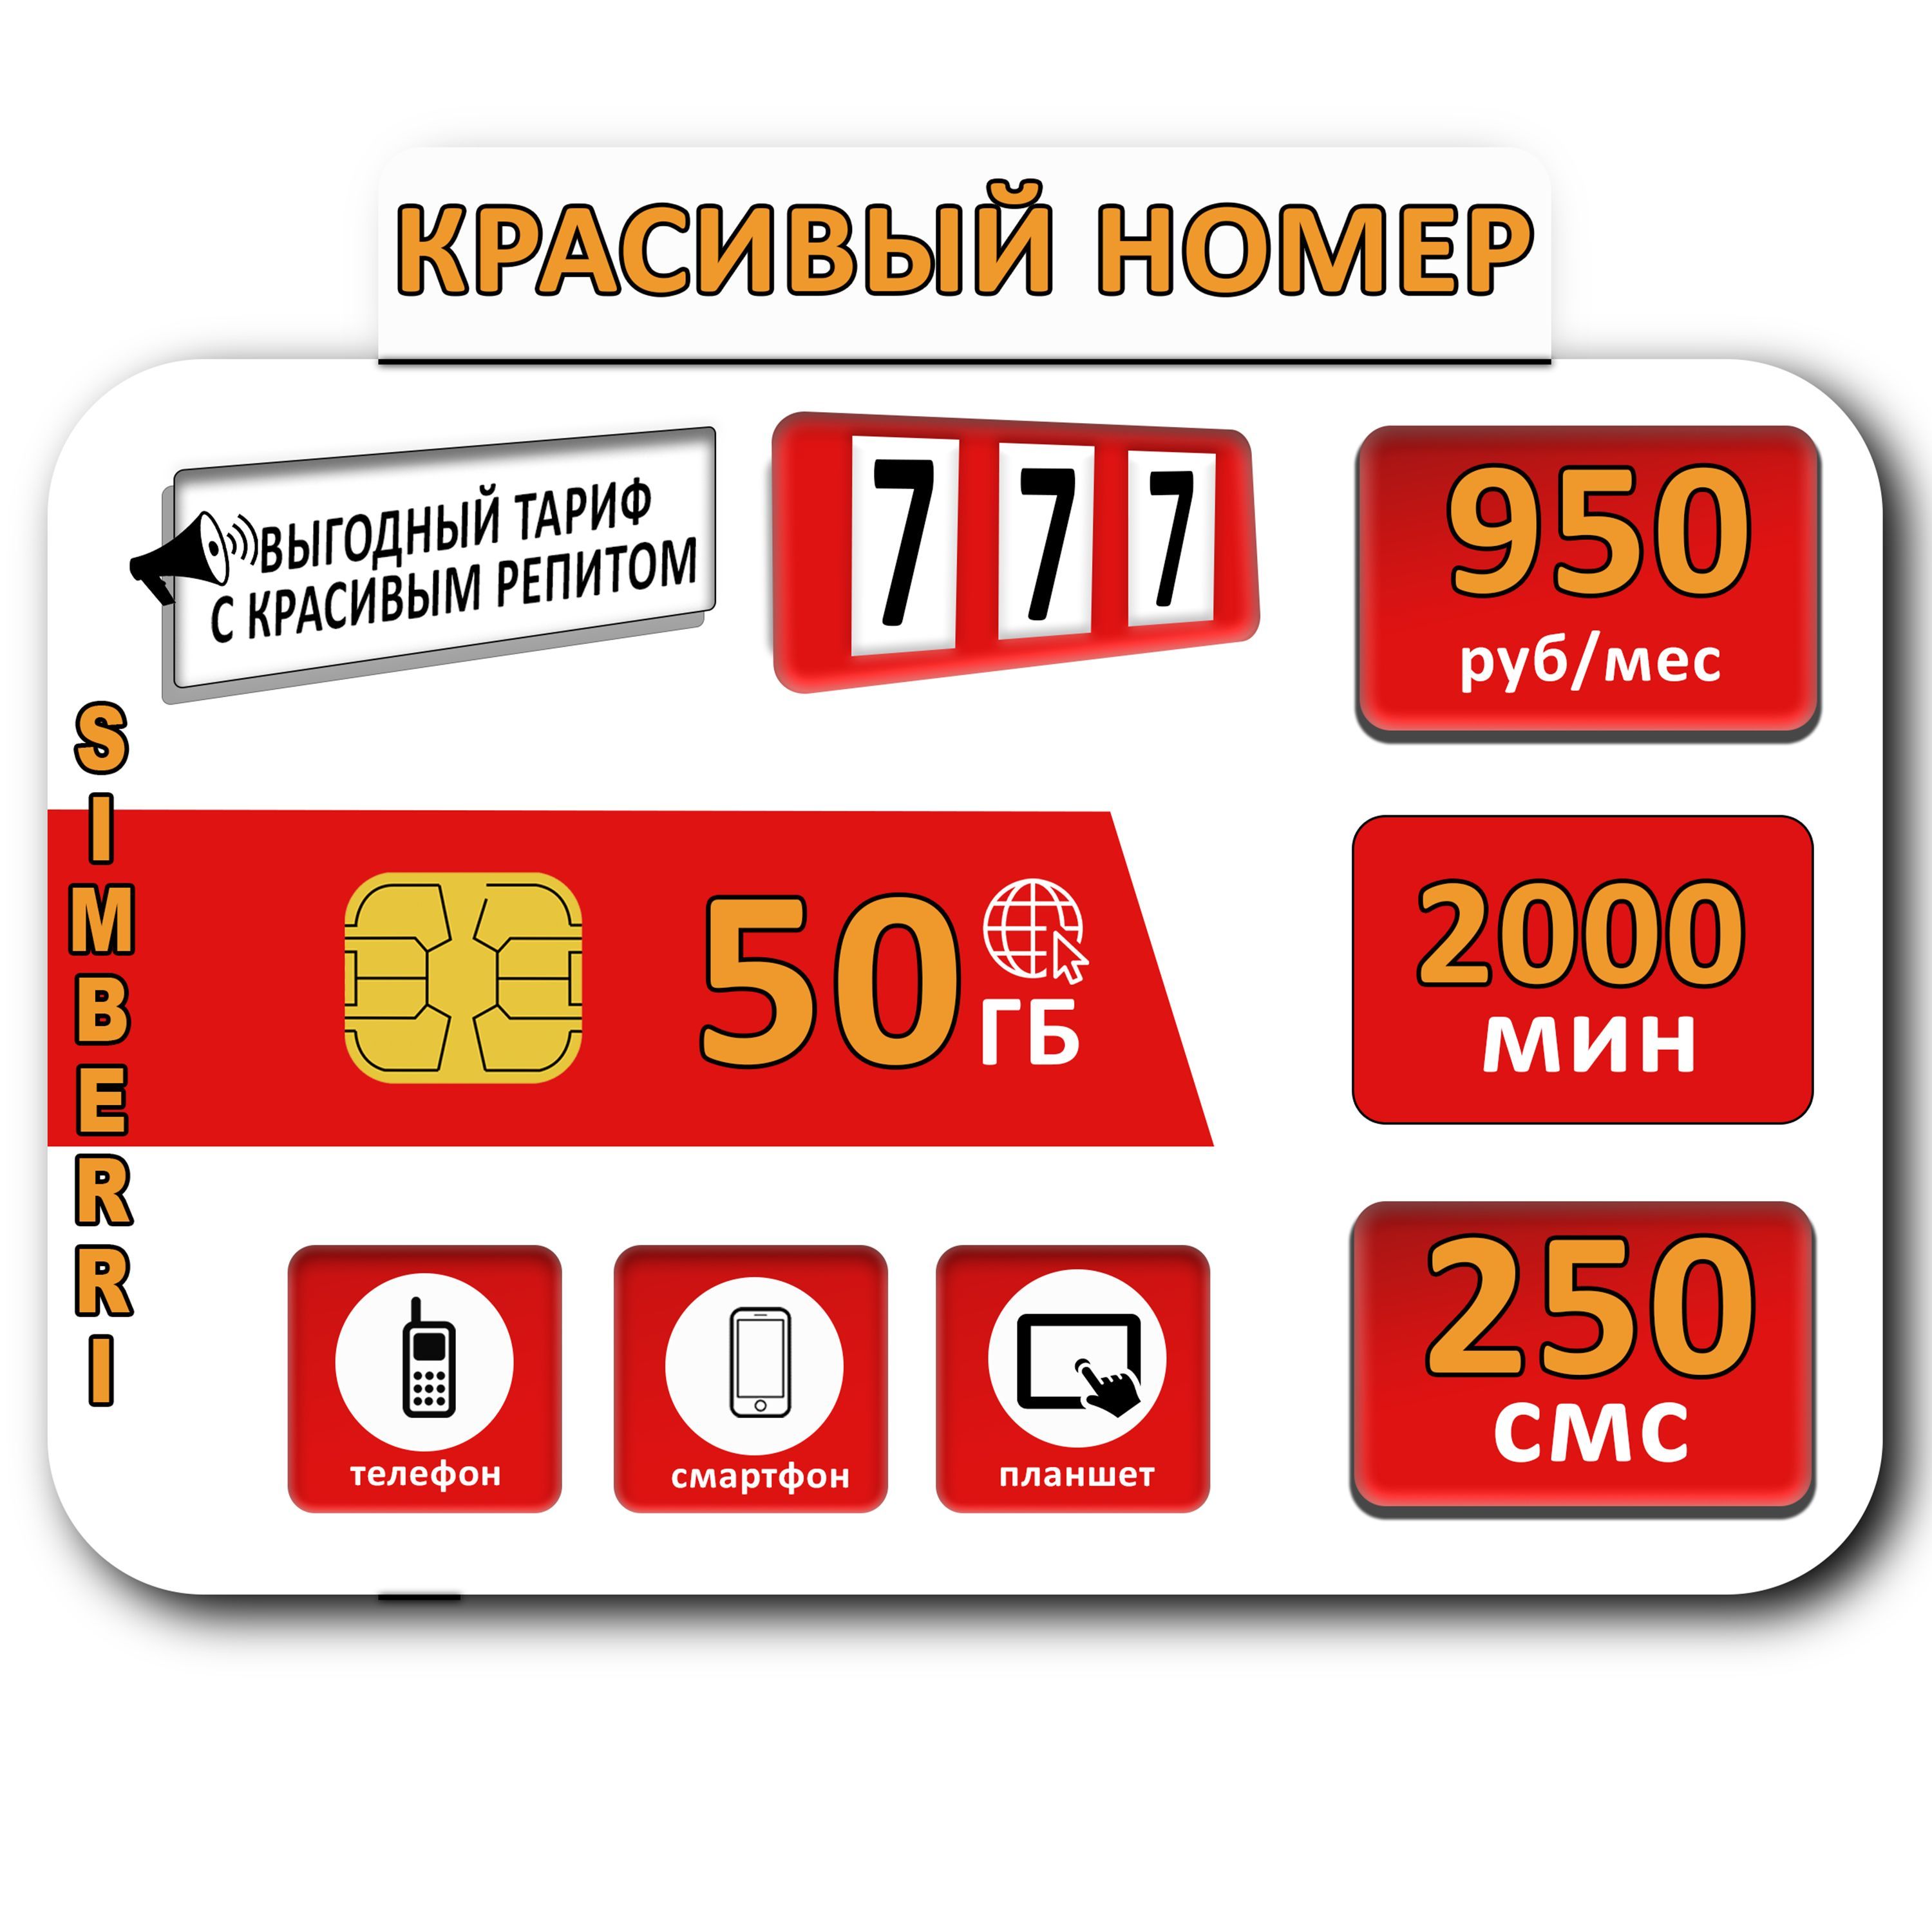 SIM-картаКрасивыйномер777(Москва,Московскаяобласть)